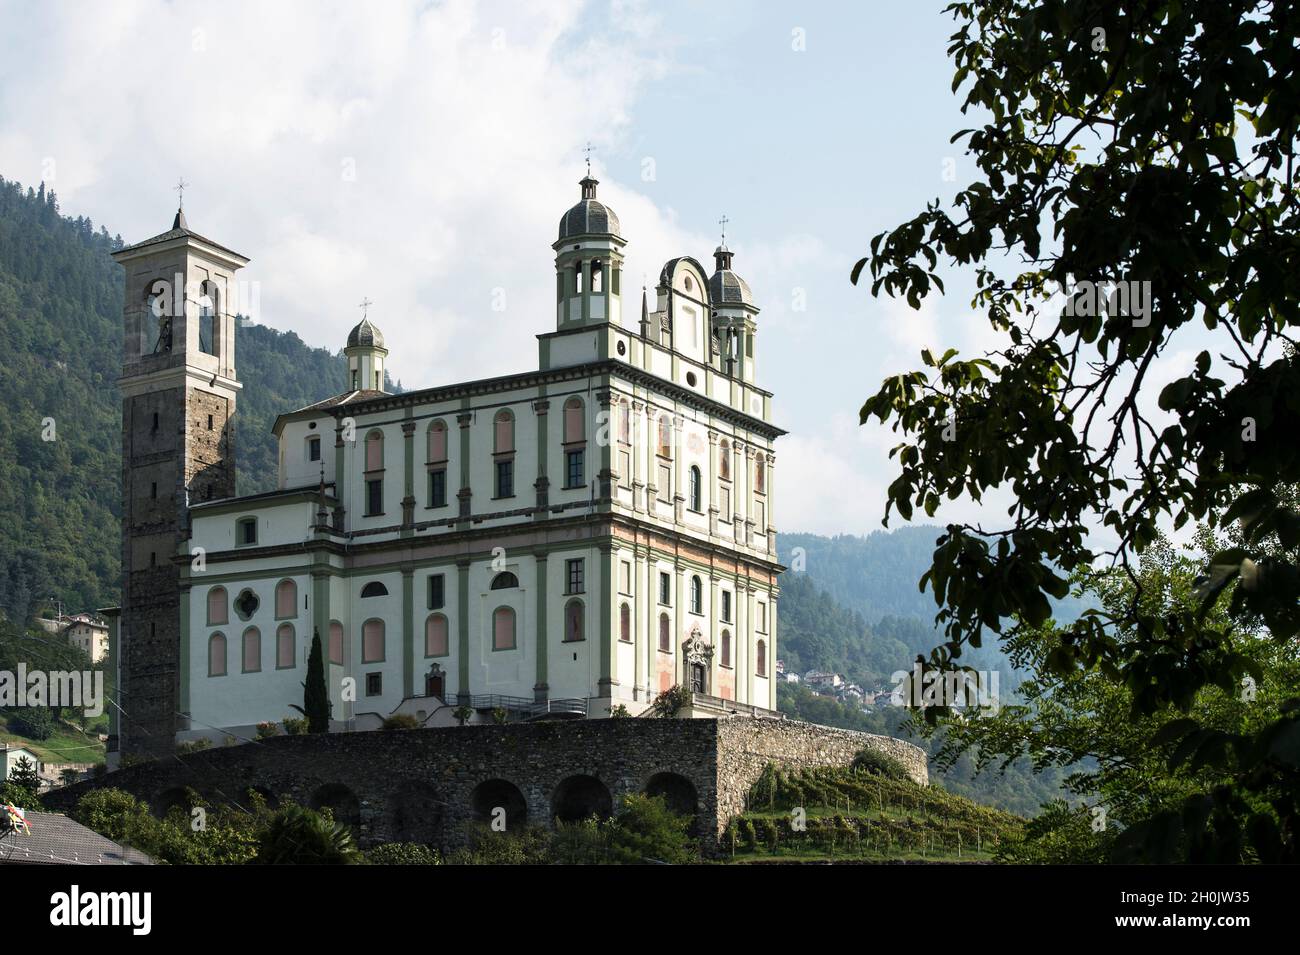 Italy, Lombardy, Valtellina, Tresivio, Santa Casa Lauretana Sanctuary Stock Photo